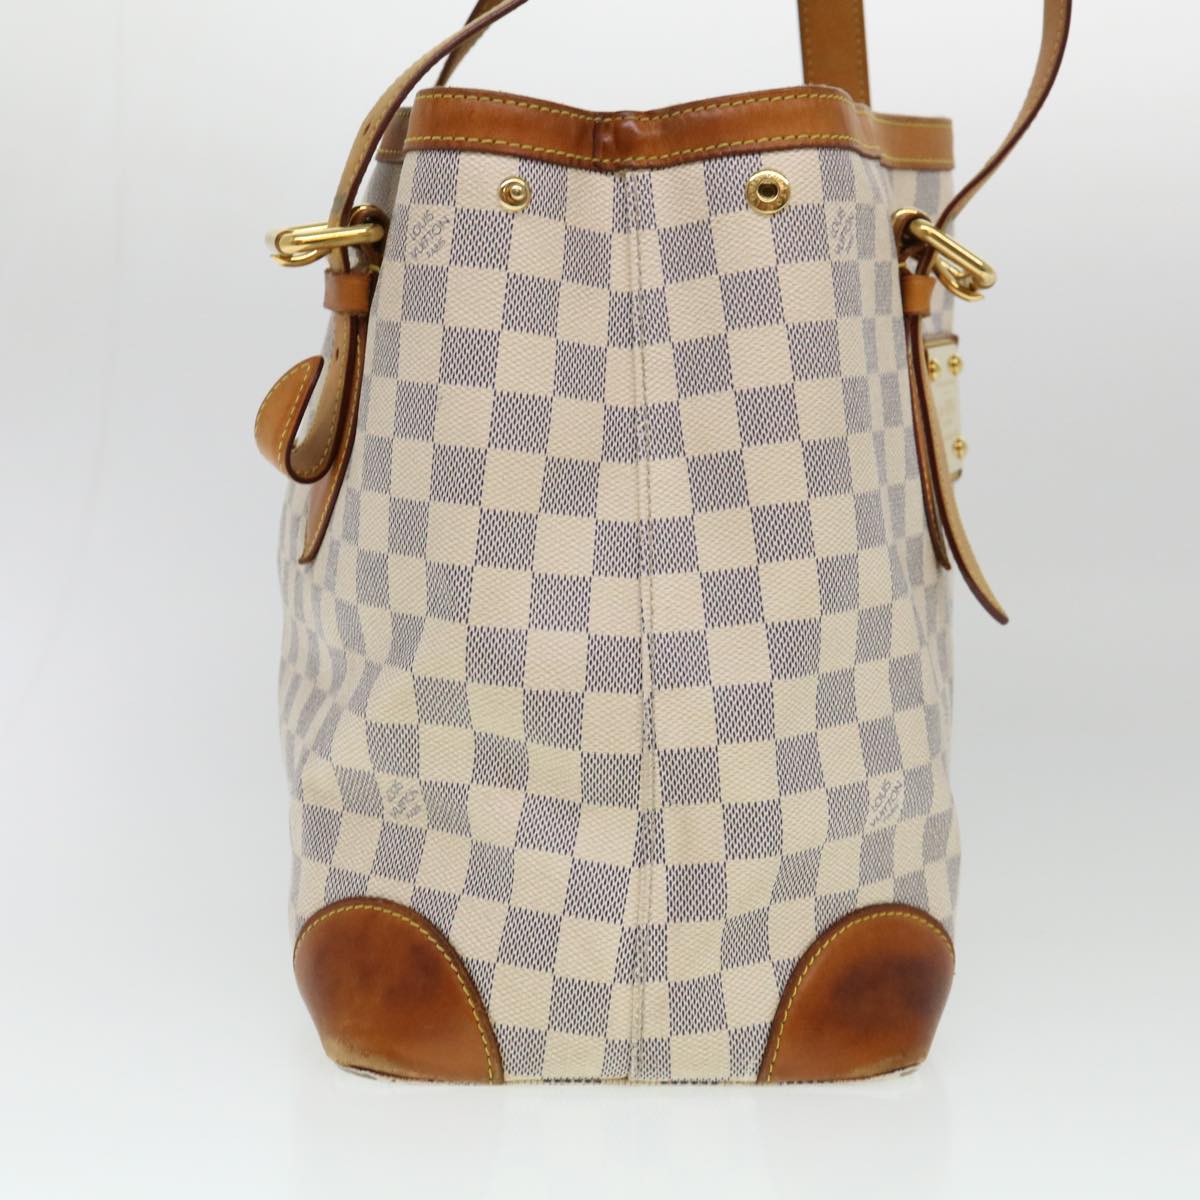 Authentic Louis Vuitton Damier Azur Hampstead MM Tote Bag N51206